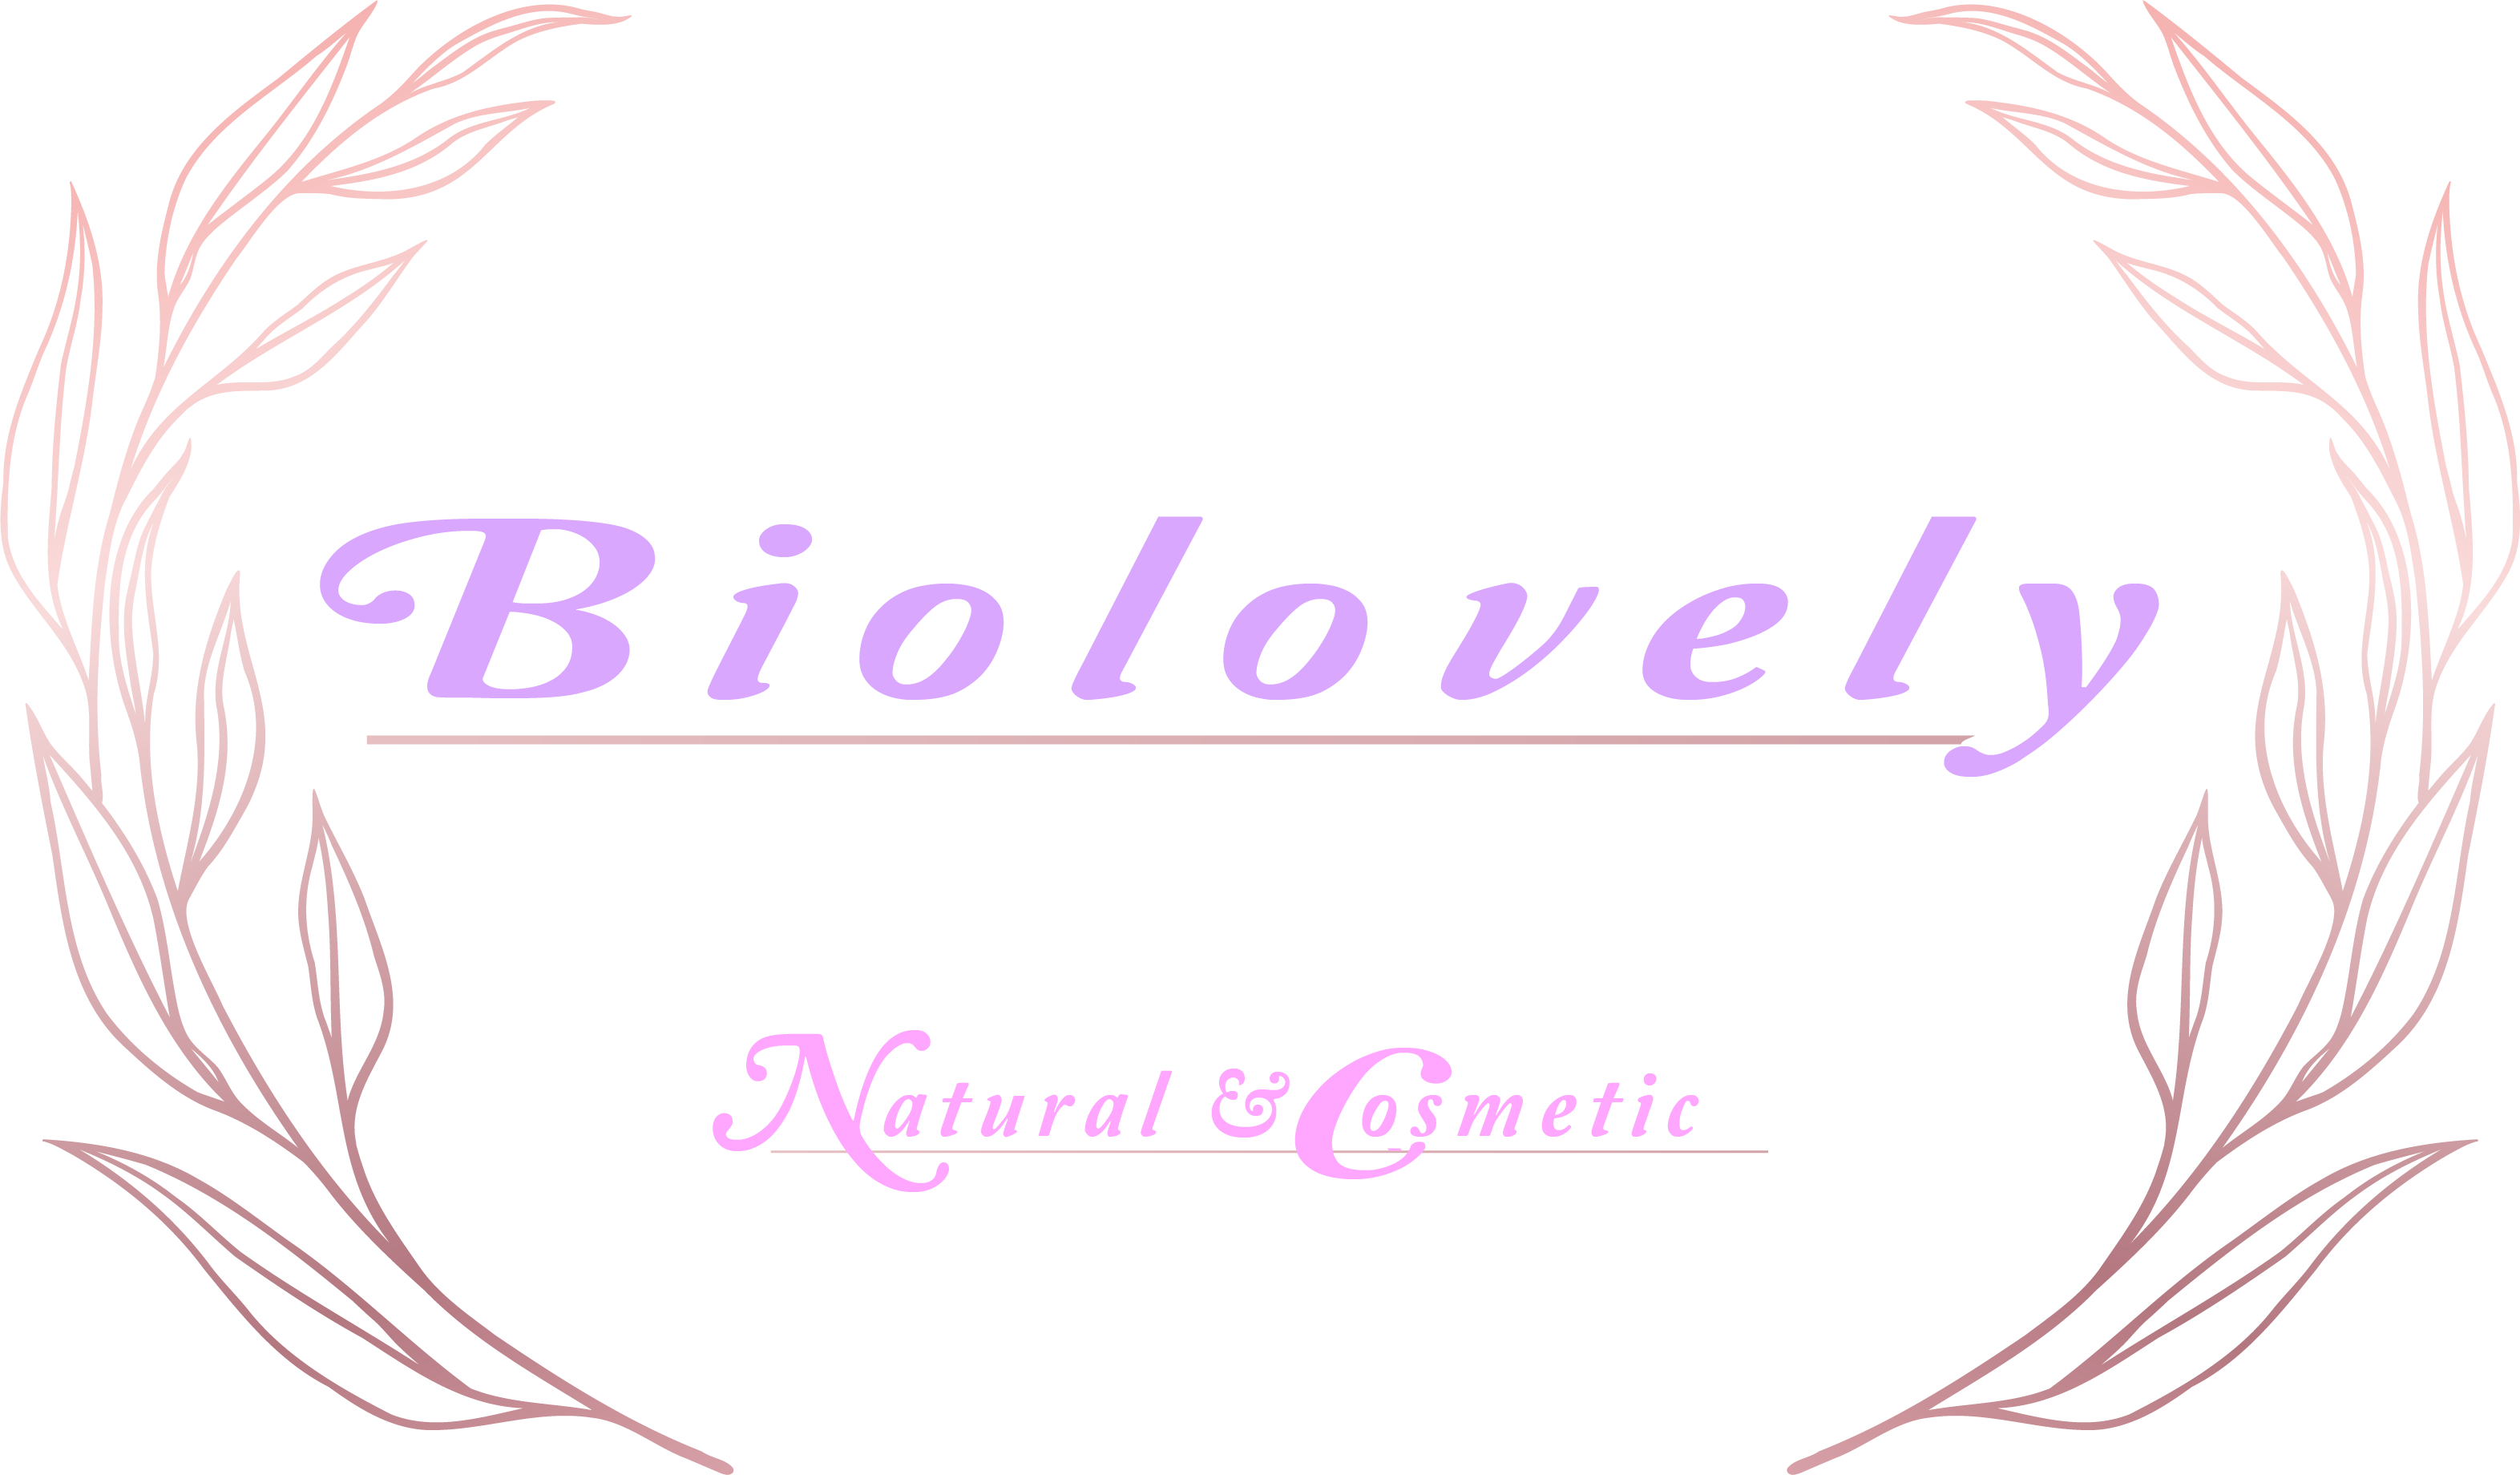 Biolovely